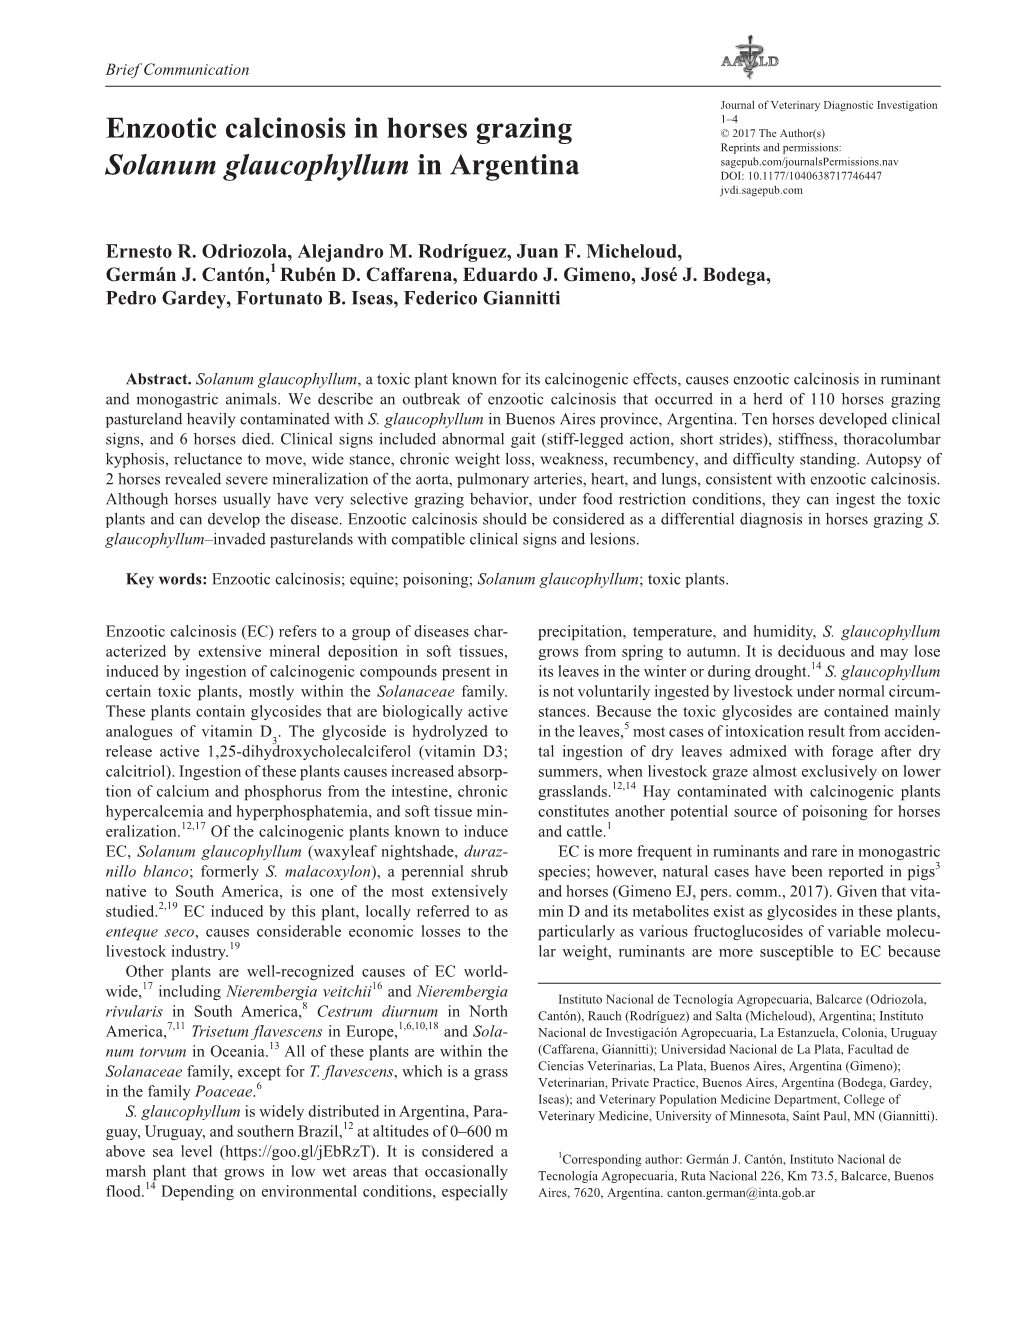 Enzootic Calcinosis in Horses Grazing Solanum Glaucophyllum in Argentina